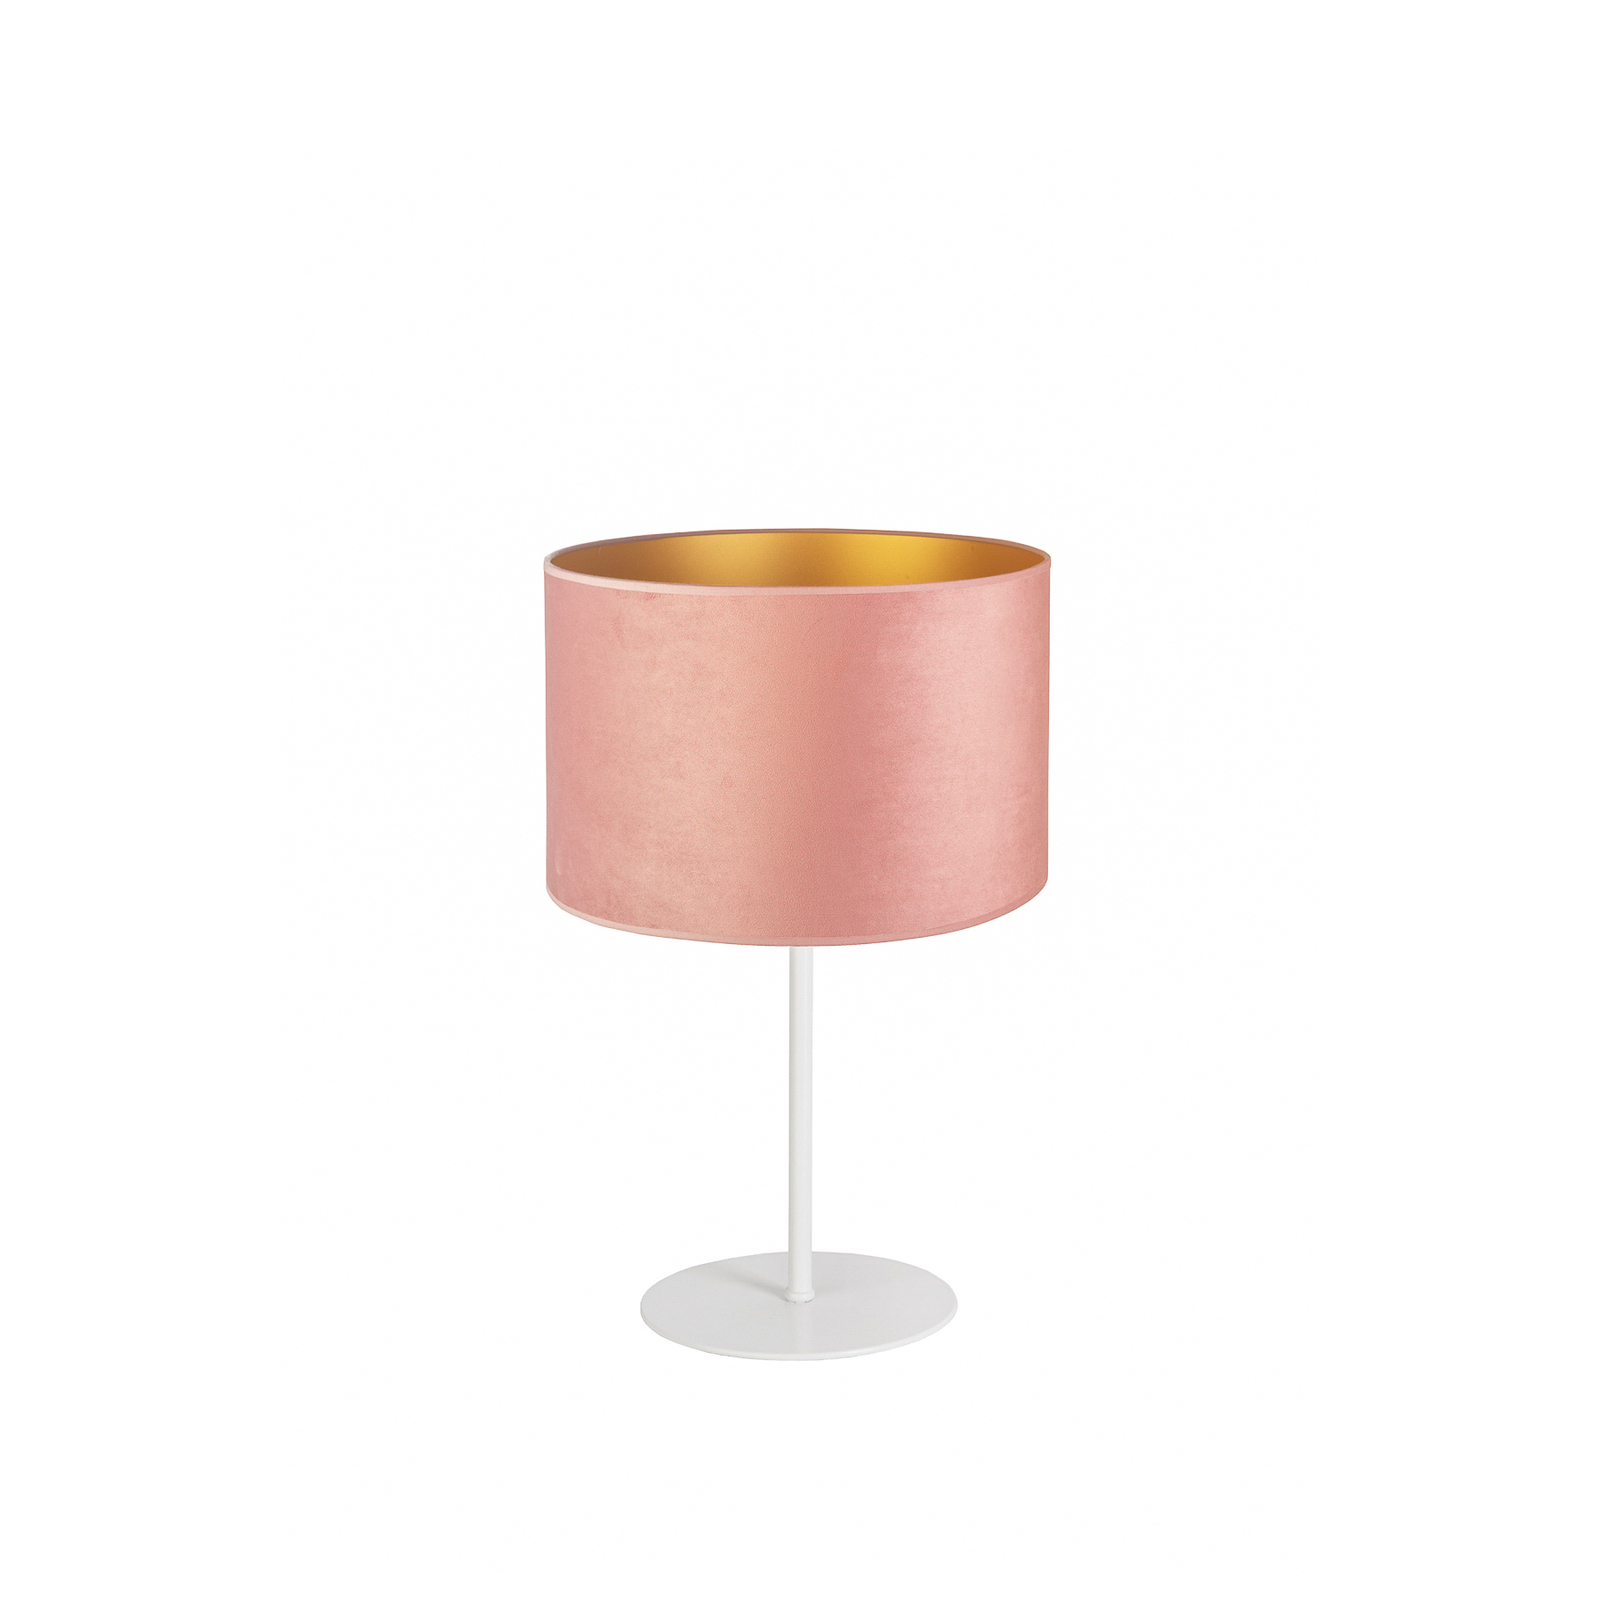 De mesa Golden Roller altura 30cm rosa claro/oro